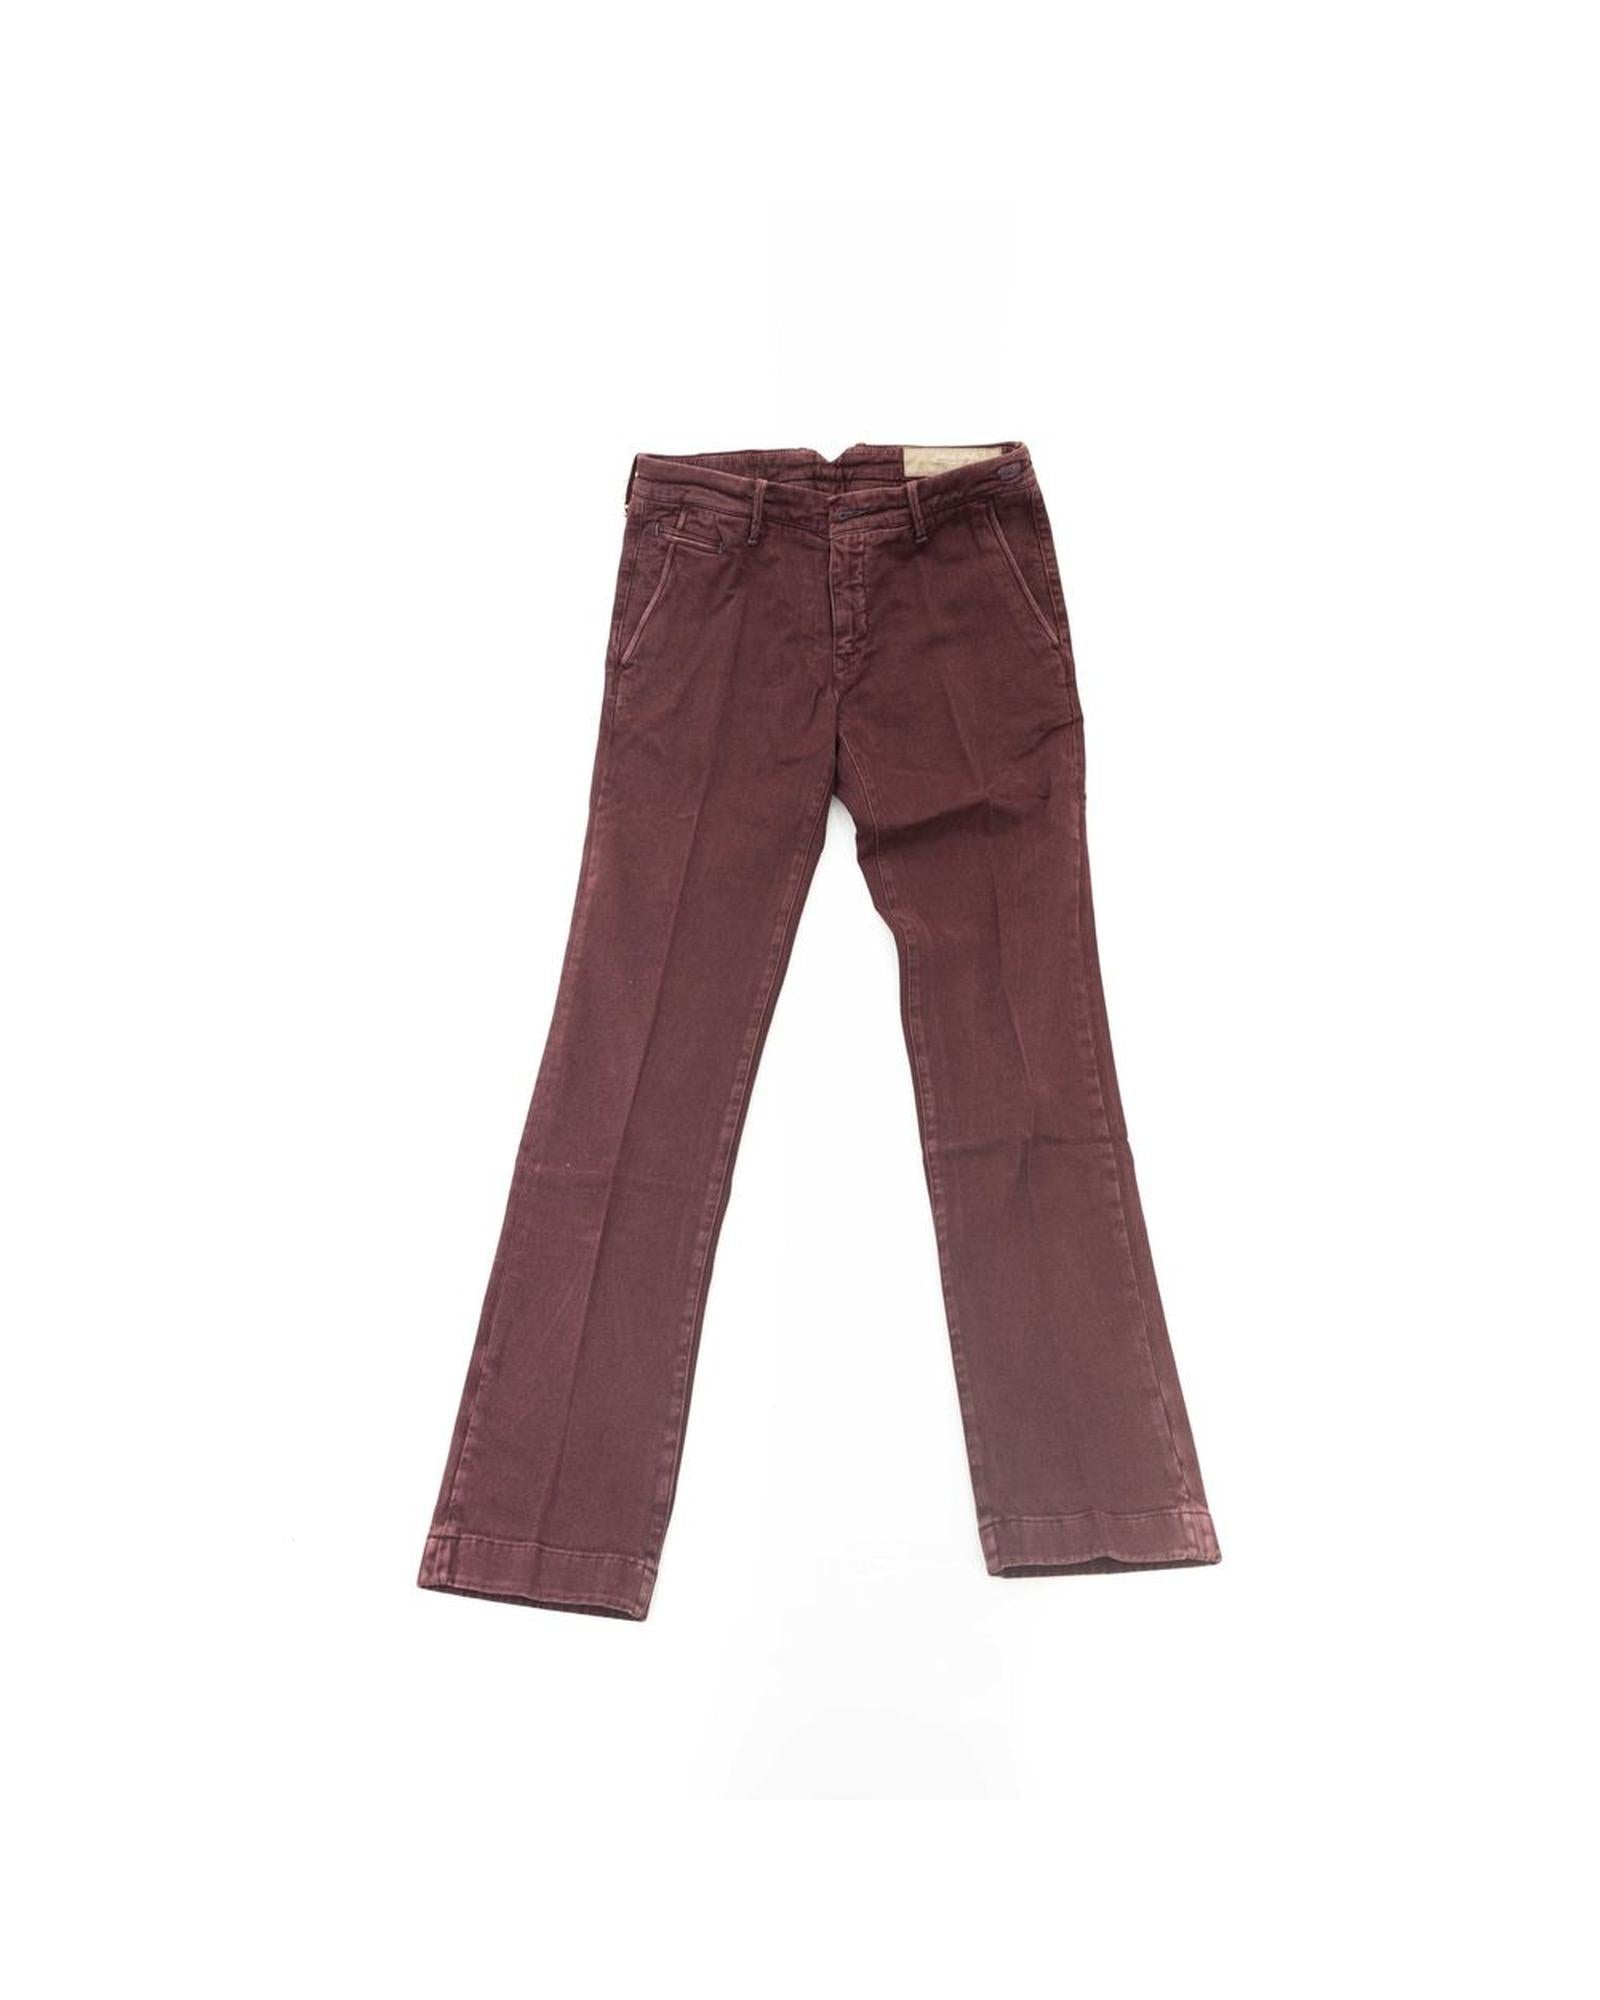 Men's Burgundy Cotton Jeans & Pant - W34 US